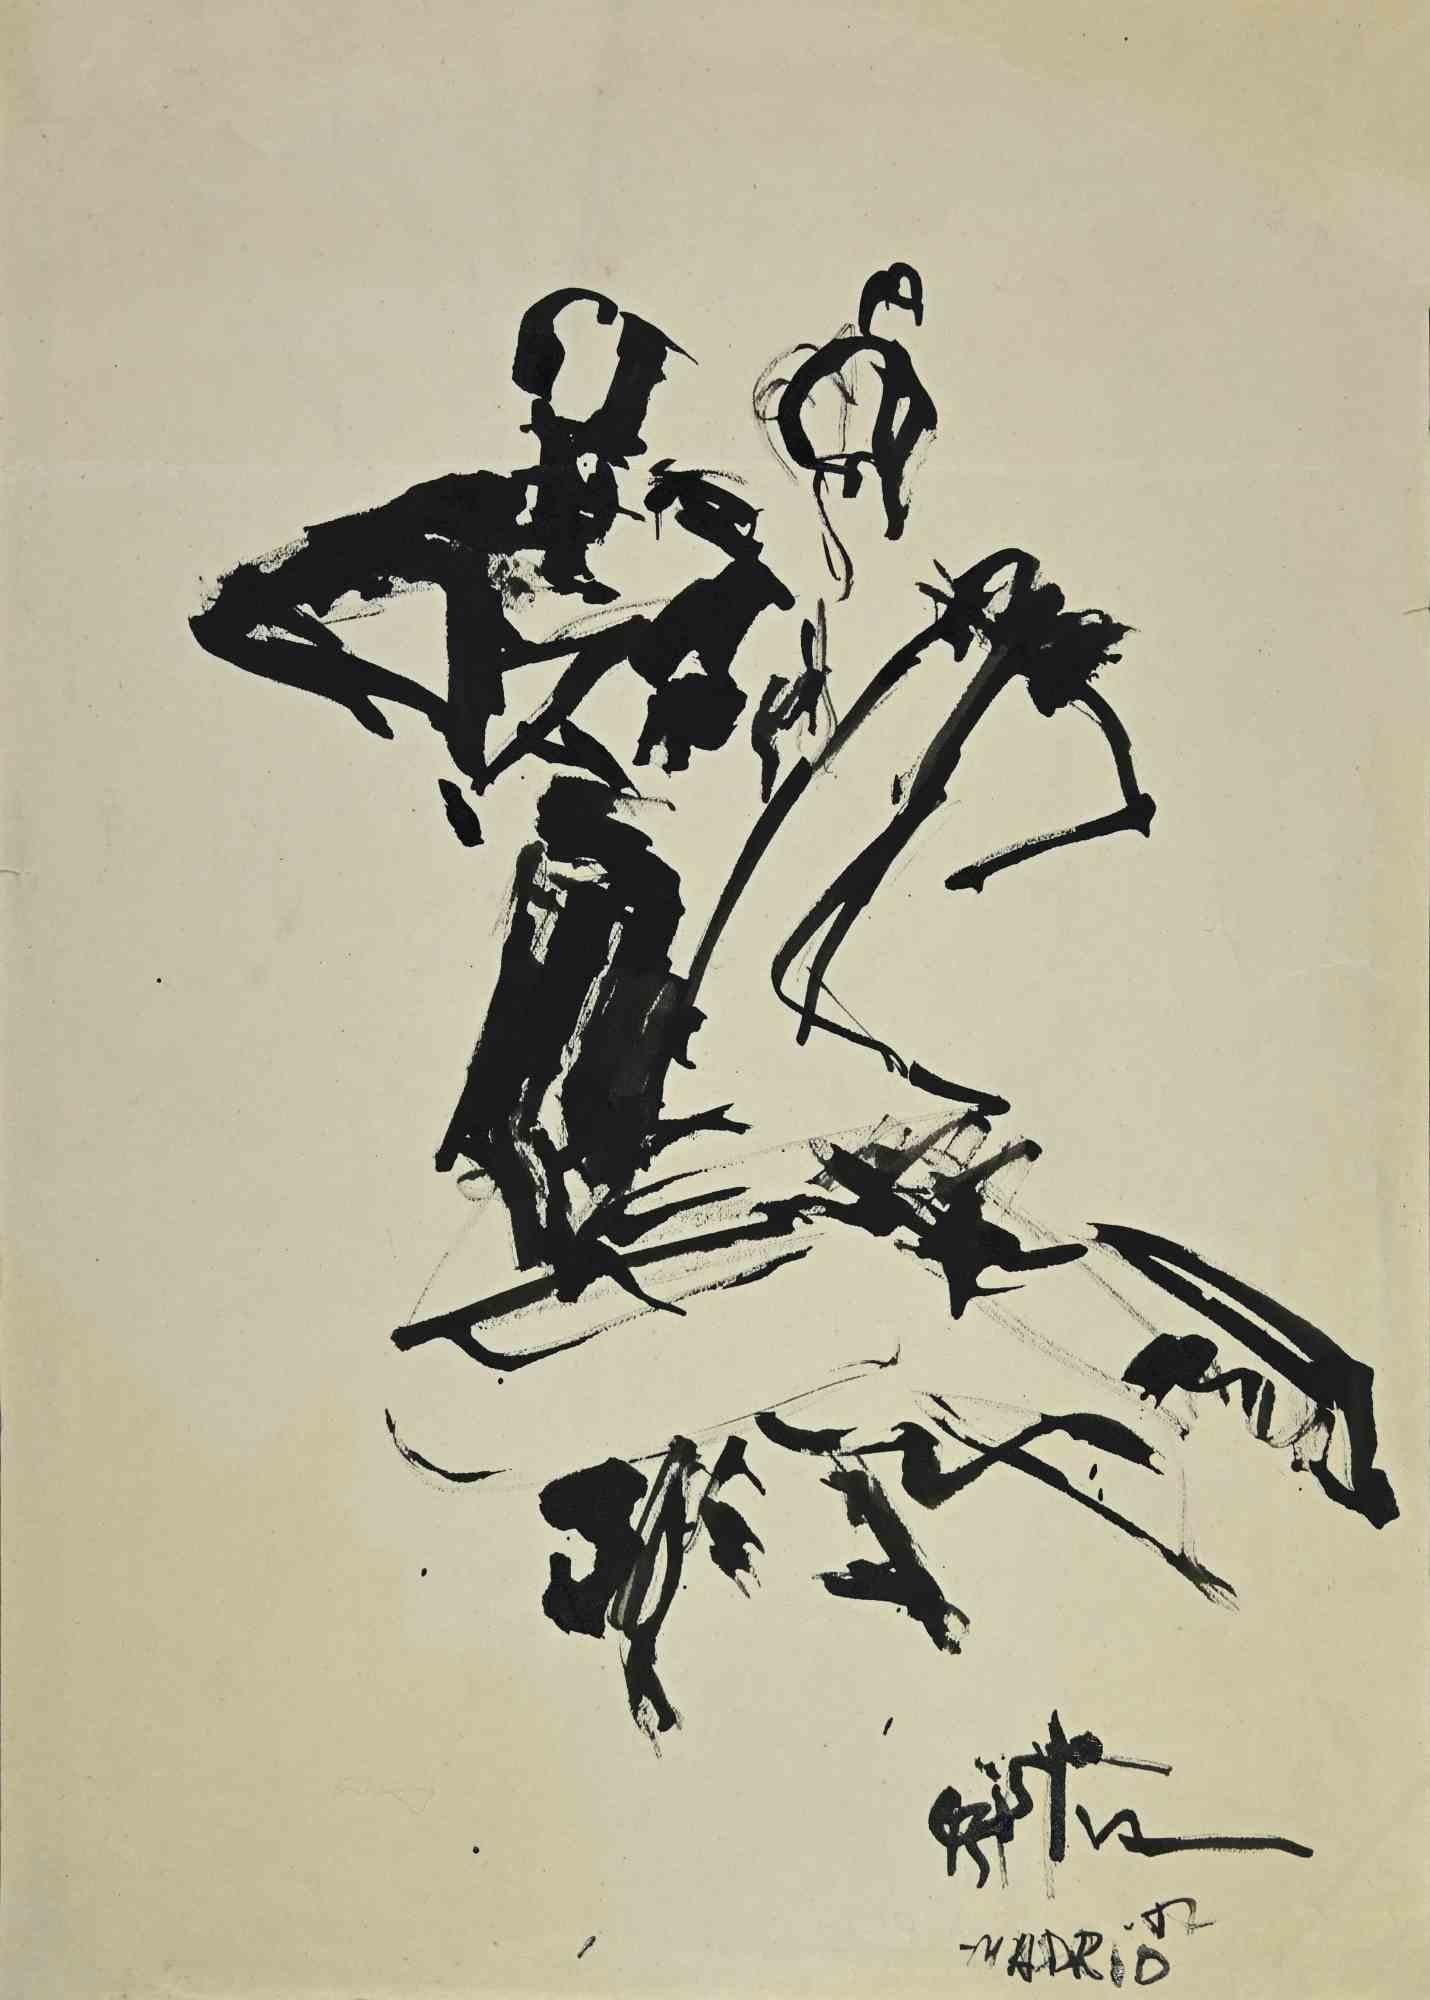 Untitled ist eine Zeichnung des Künstlers Cristian Uboldi aus dem Jahr 1952. 

Schwarz-weiße Mischtechnik auf Papier. Handsigniert und datiert in der rechten Ecke.

Der Künstler will eine ausgewogene Komposition durch Präzision und kongruente B./W.